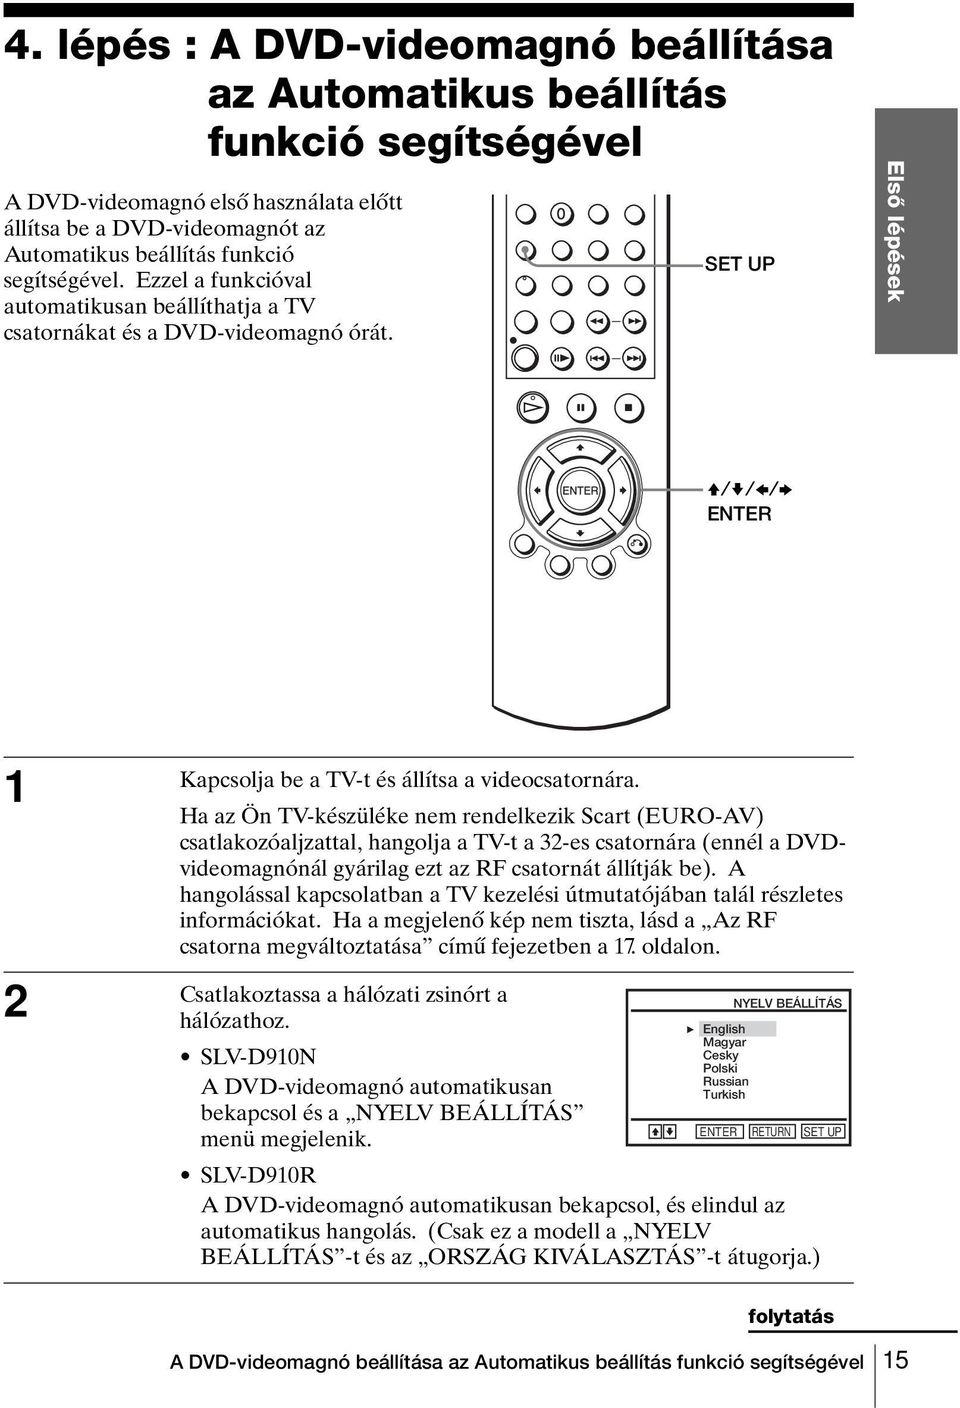 Ha az Ön TV-készüléke nem rendelkezik Scart (EURO-AV) csatlakozóaljzattal, hangolja a TV-t a 32-es csatornára (ennél a DVDvideomagnónál gyárilag ezt az RF csatornát állítják be).